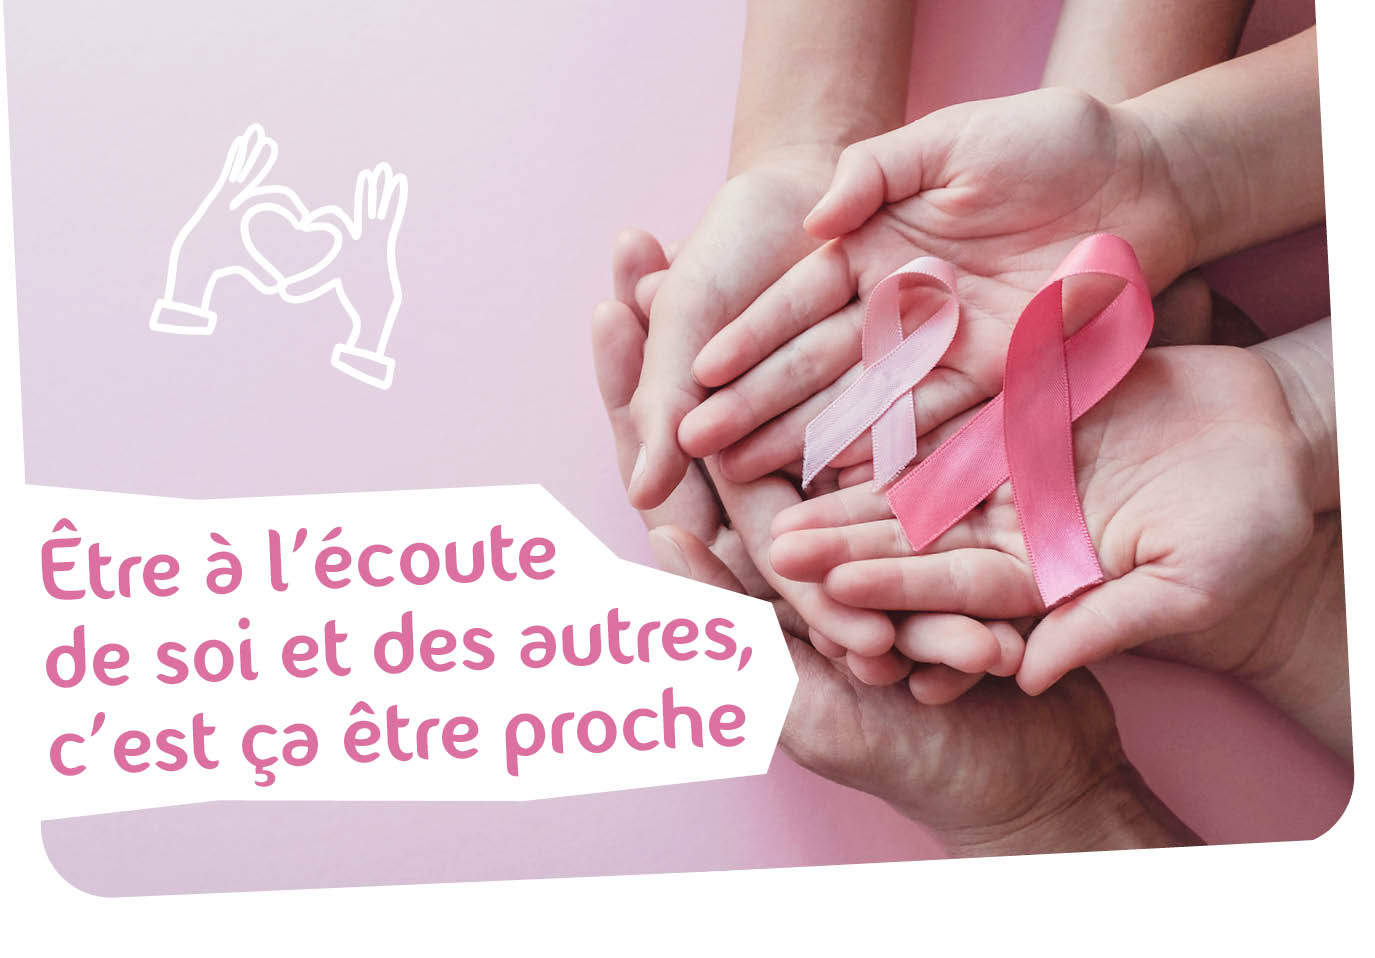 Octobre Rose : Ensemble pour la prévention du cancer du sein